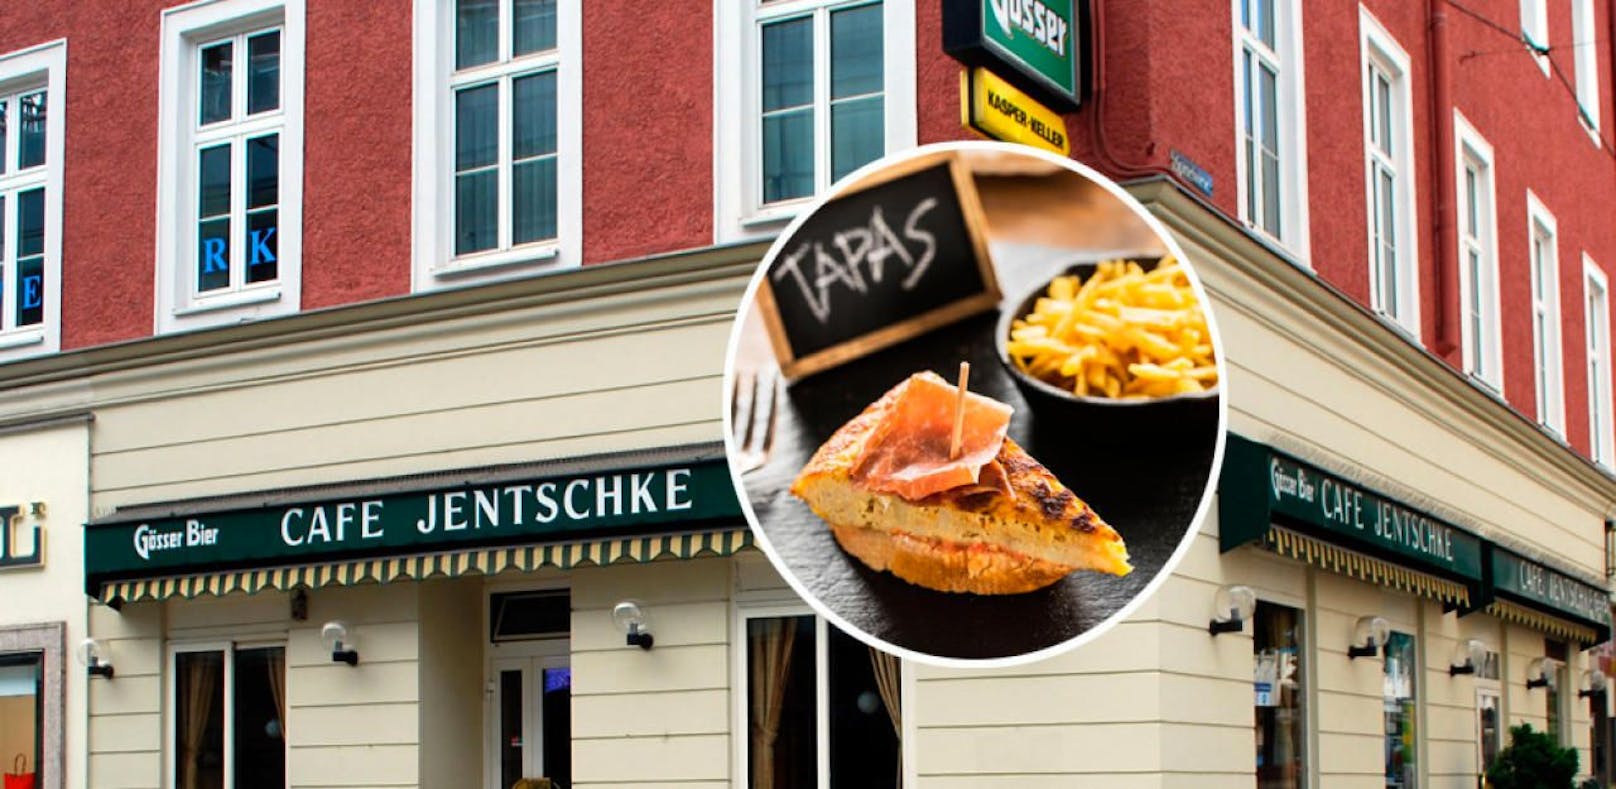 Das Café Jentschke in Linz wird zu einer Tapas-Bar